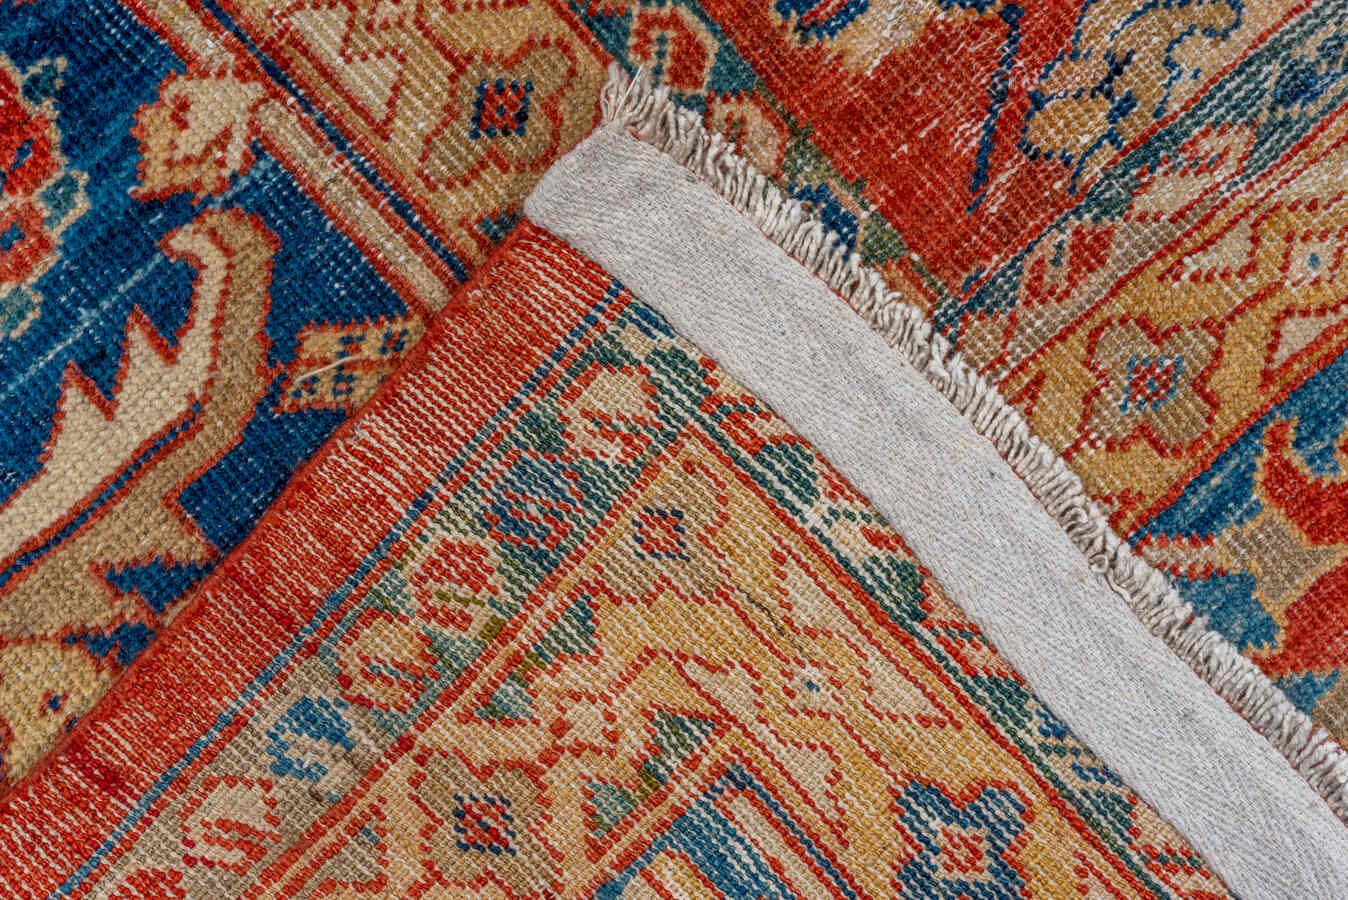 Antique sultan abad Carpet - # 56859